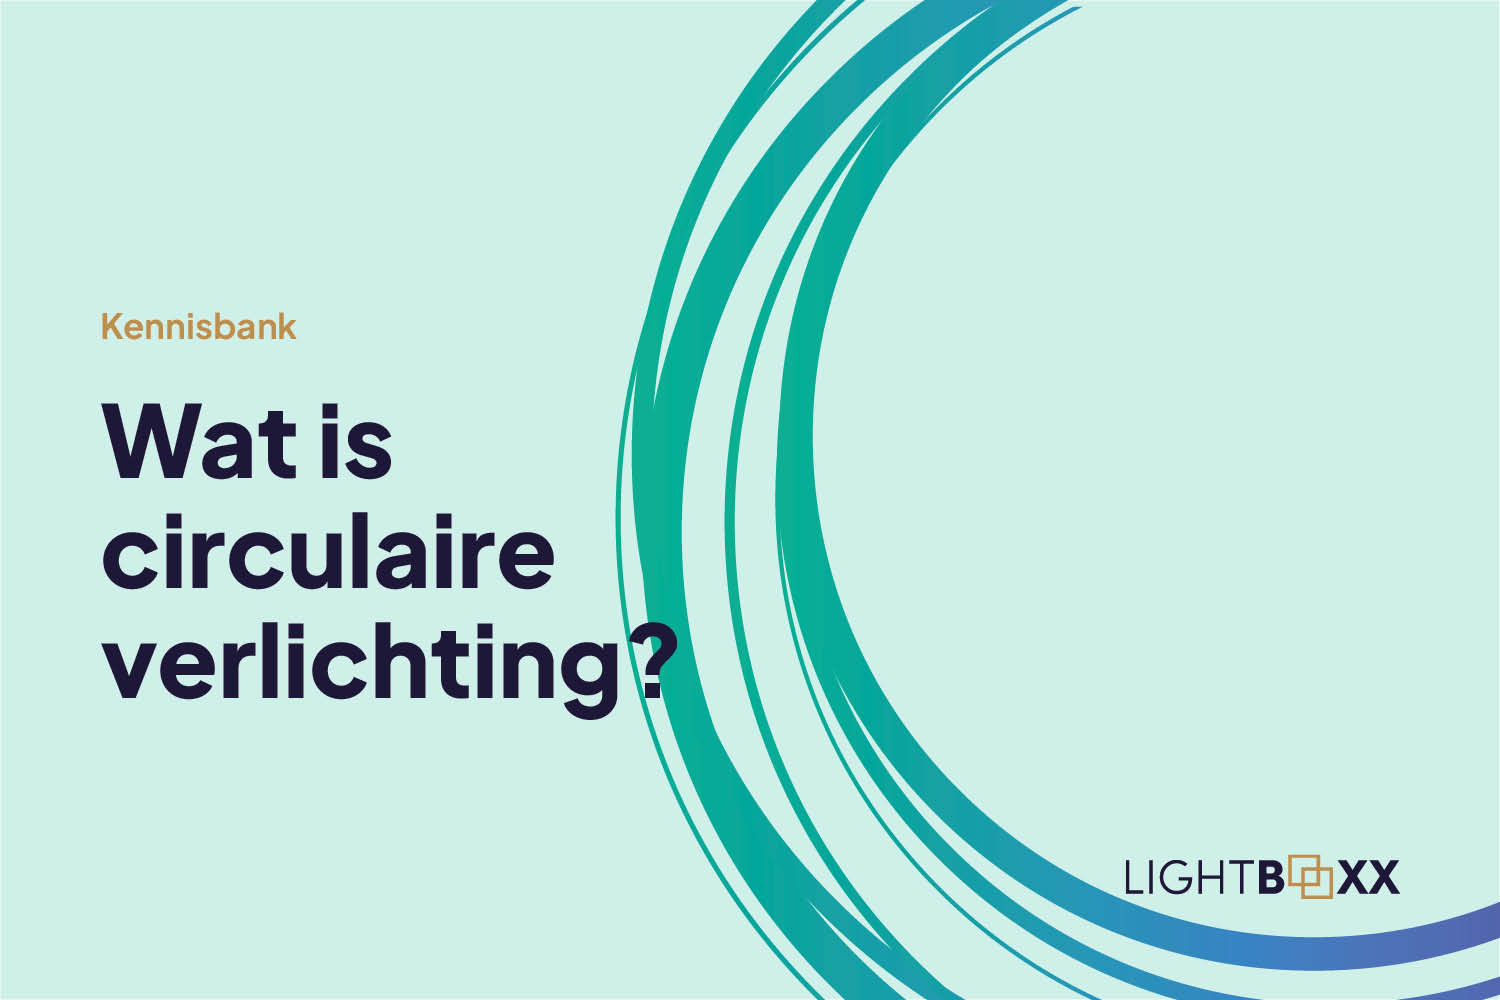 Wat is circulaire verlichting?